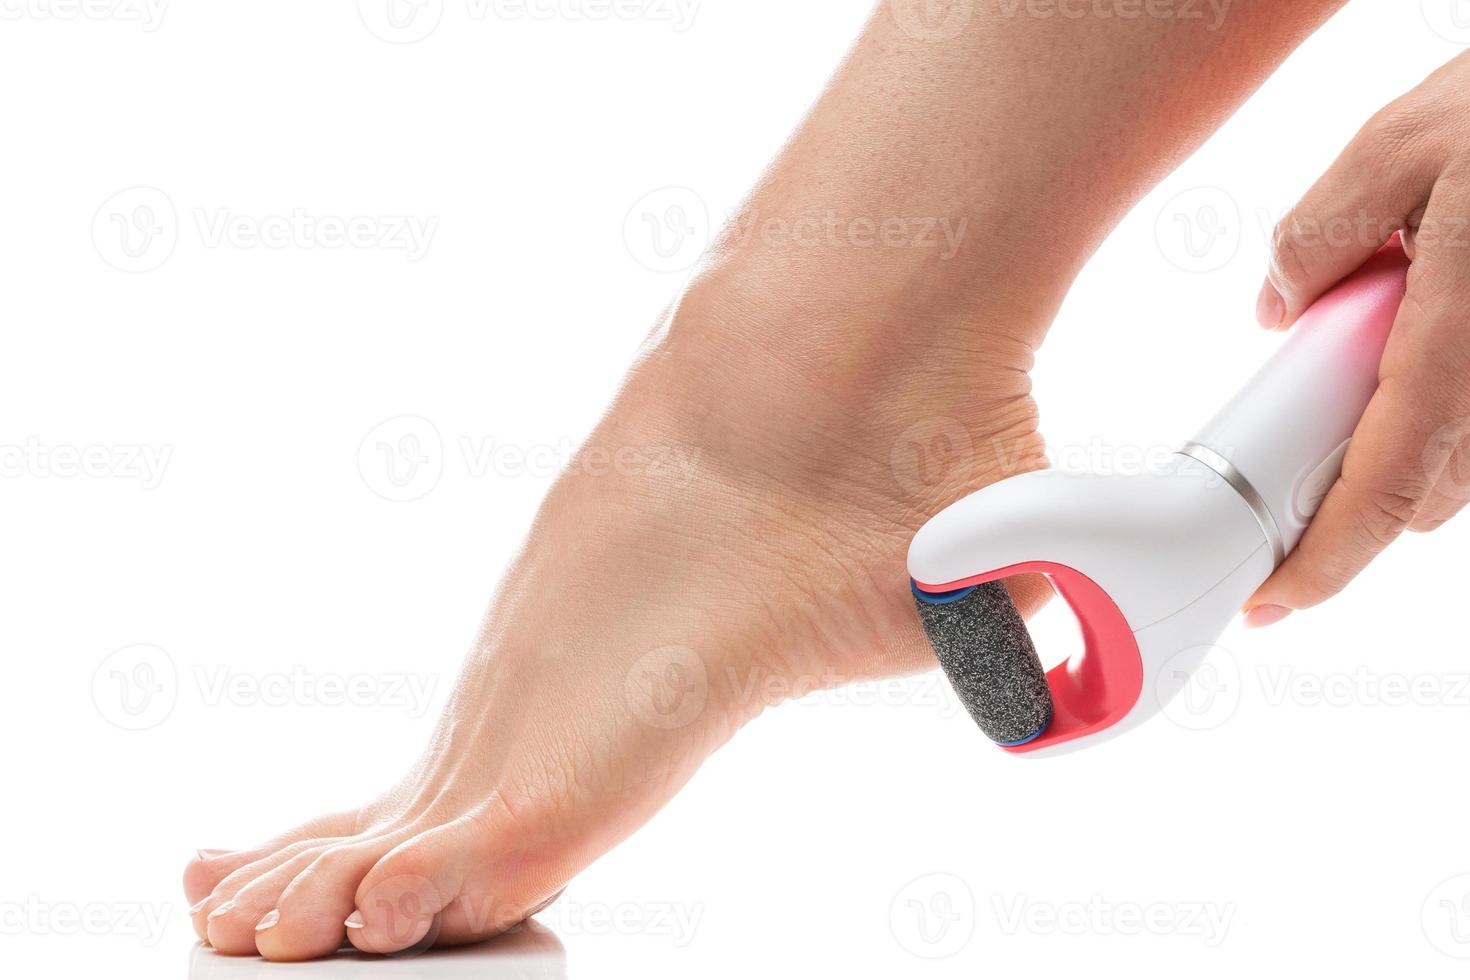 pies femeninos y lima eléctrica para pies para eliminación de callos y piel muerta sobre fondo blanco foto